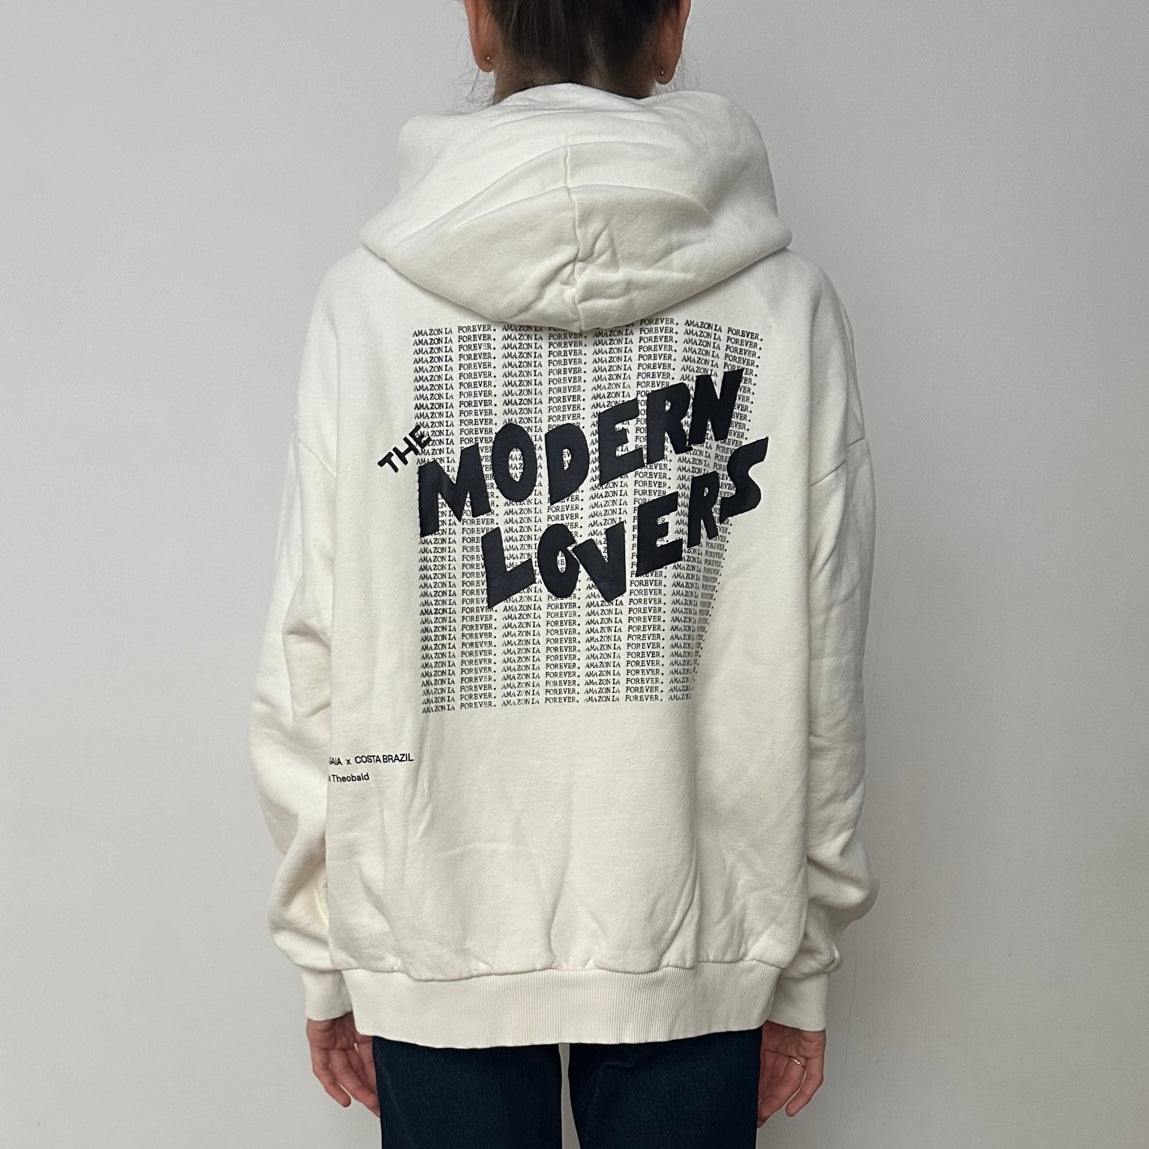 Modern Lovers Hoodie